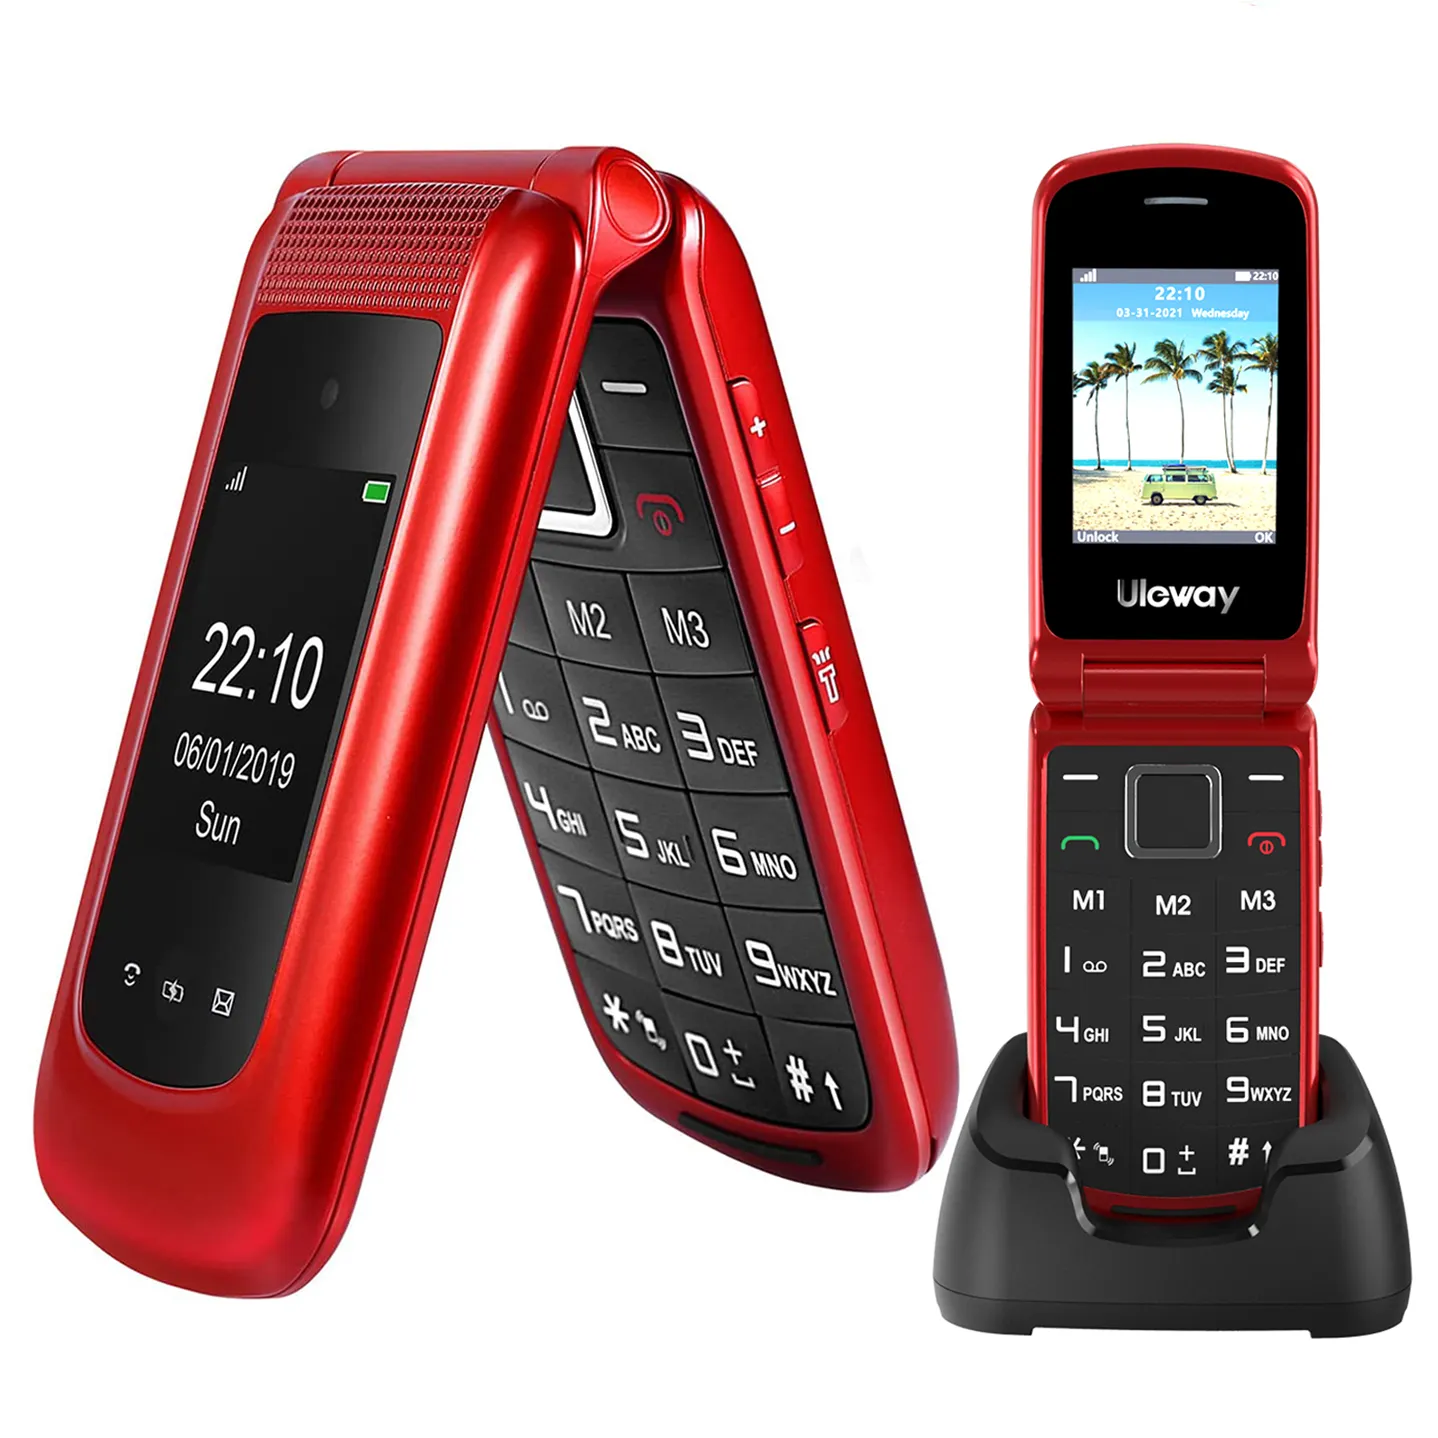 Fabrika yüksek kalite Unlocked 4g Bar cep telefonu Flip & 1.77 + 2.4 ''çift ekran 4g kıdemli cep telefonu sözleşme-kırmızı olmadan